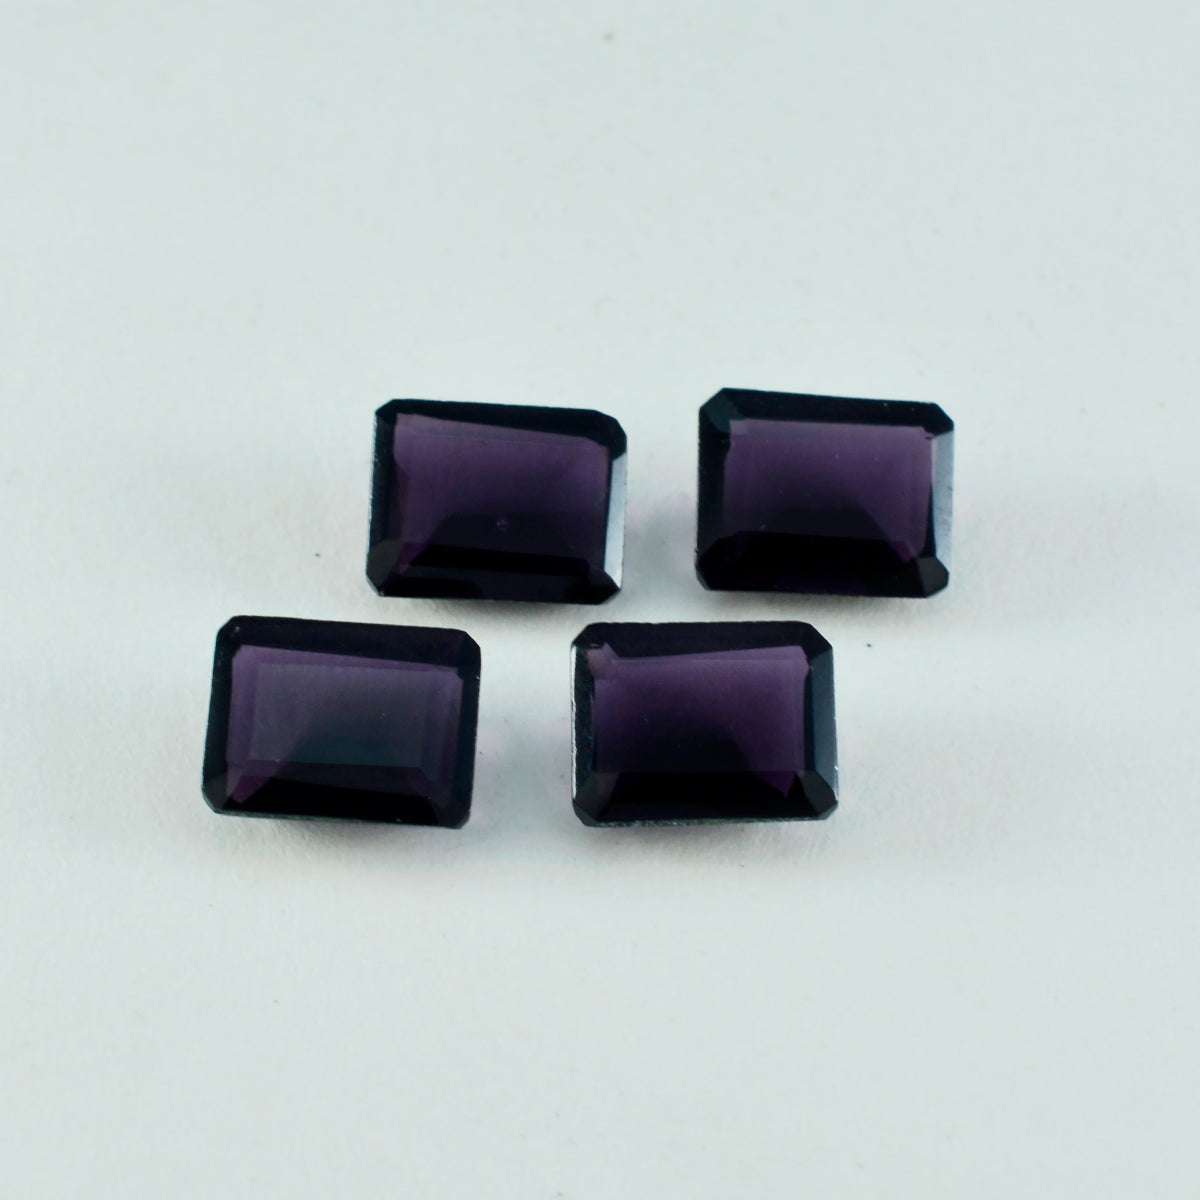 Riyogems 1 Stück violetter Amethyst mit CZ, facettiert, 12 x 16 mm, achteckige Form, schöne Qualität, loser Edelstein